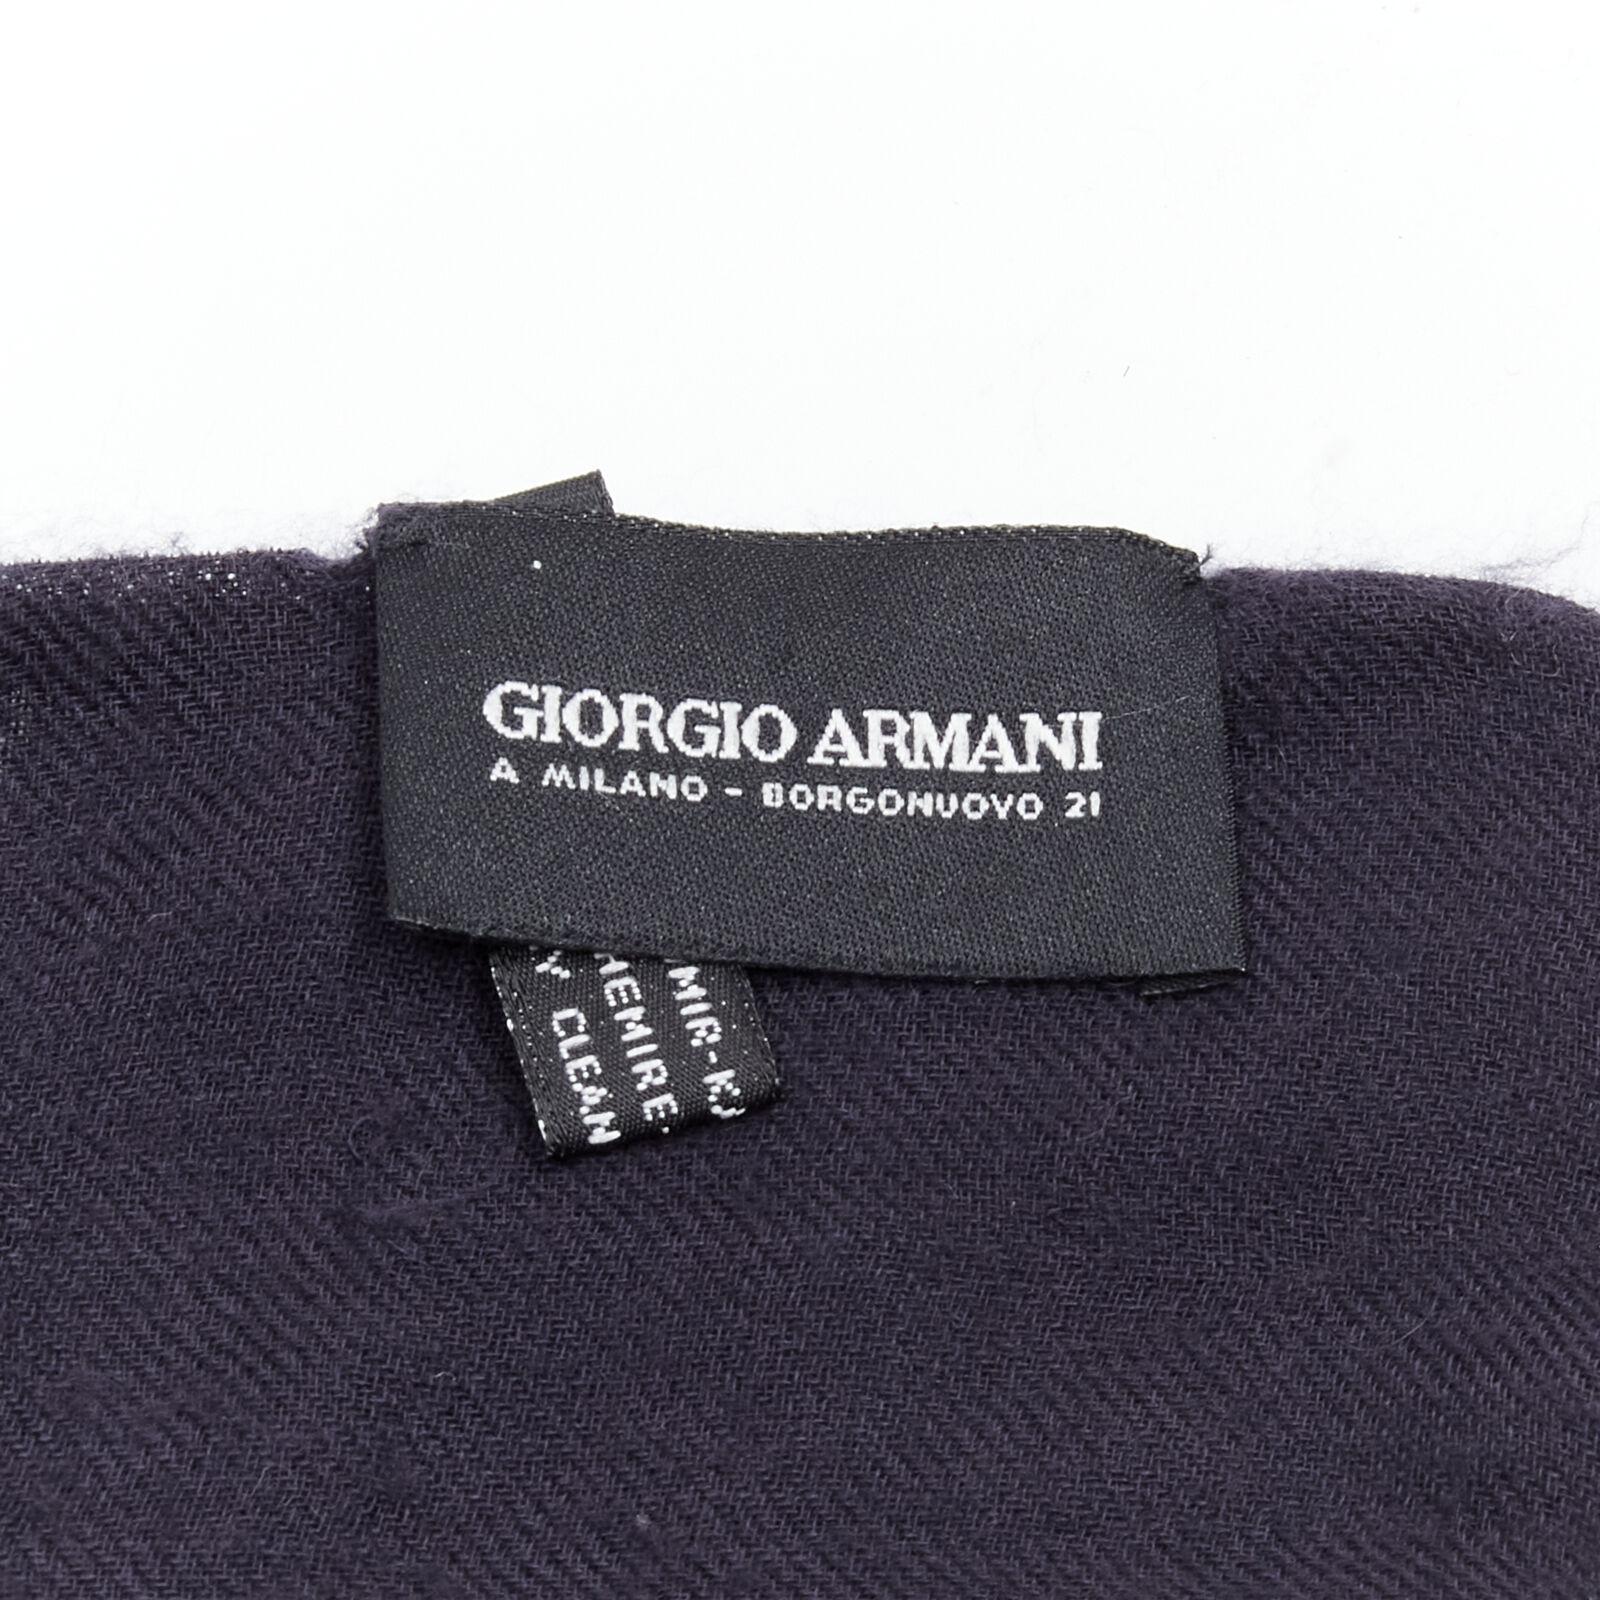 GIORGIO ARMANI 100% cashmere black soft half moon scarf For Sale 3